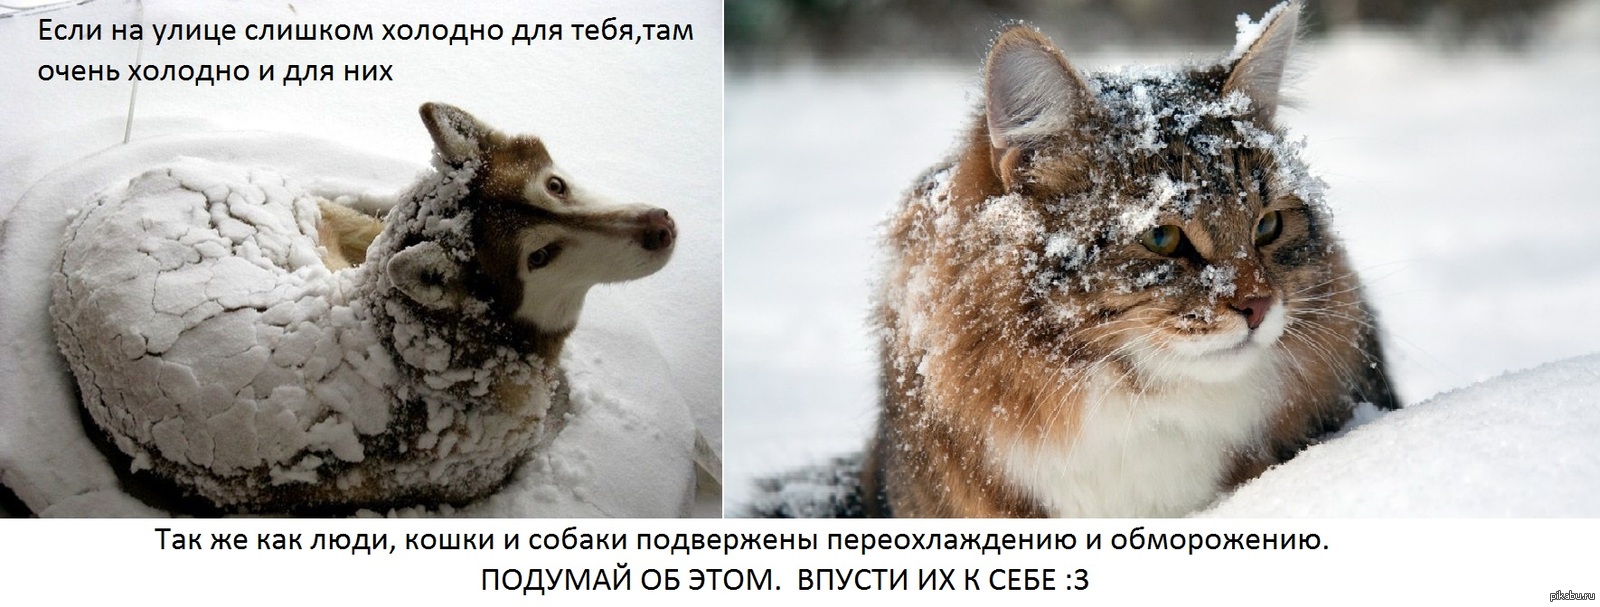 Очень сильно холодно. Бездомные животные зима. Замерзающие бездомные животные. Помогайте бездомным животным в Морозы. Бездомные животные мерзнут.